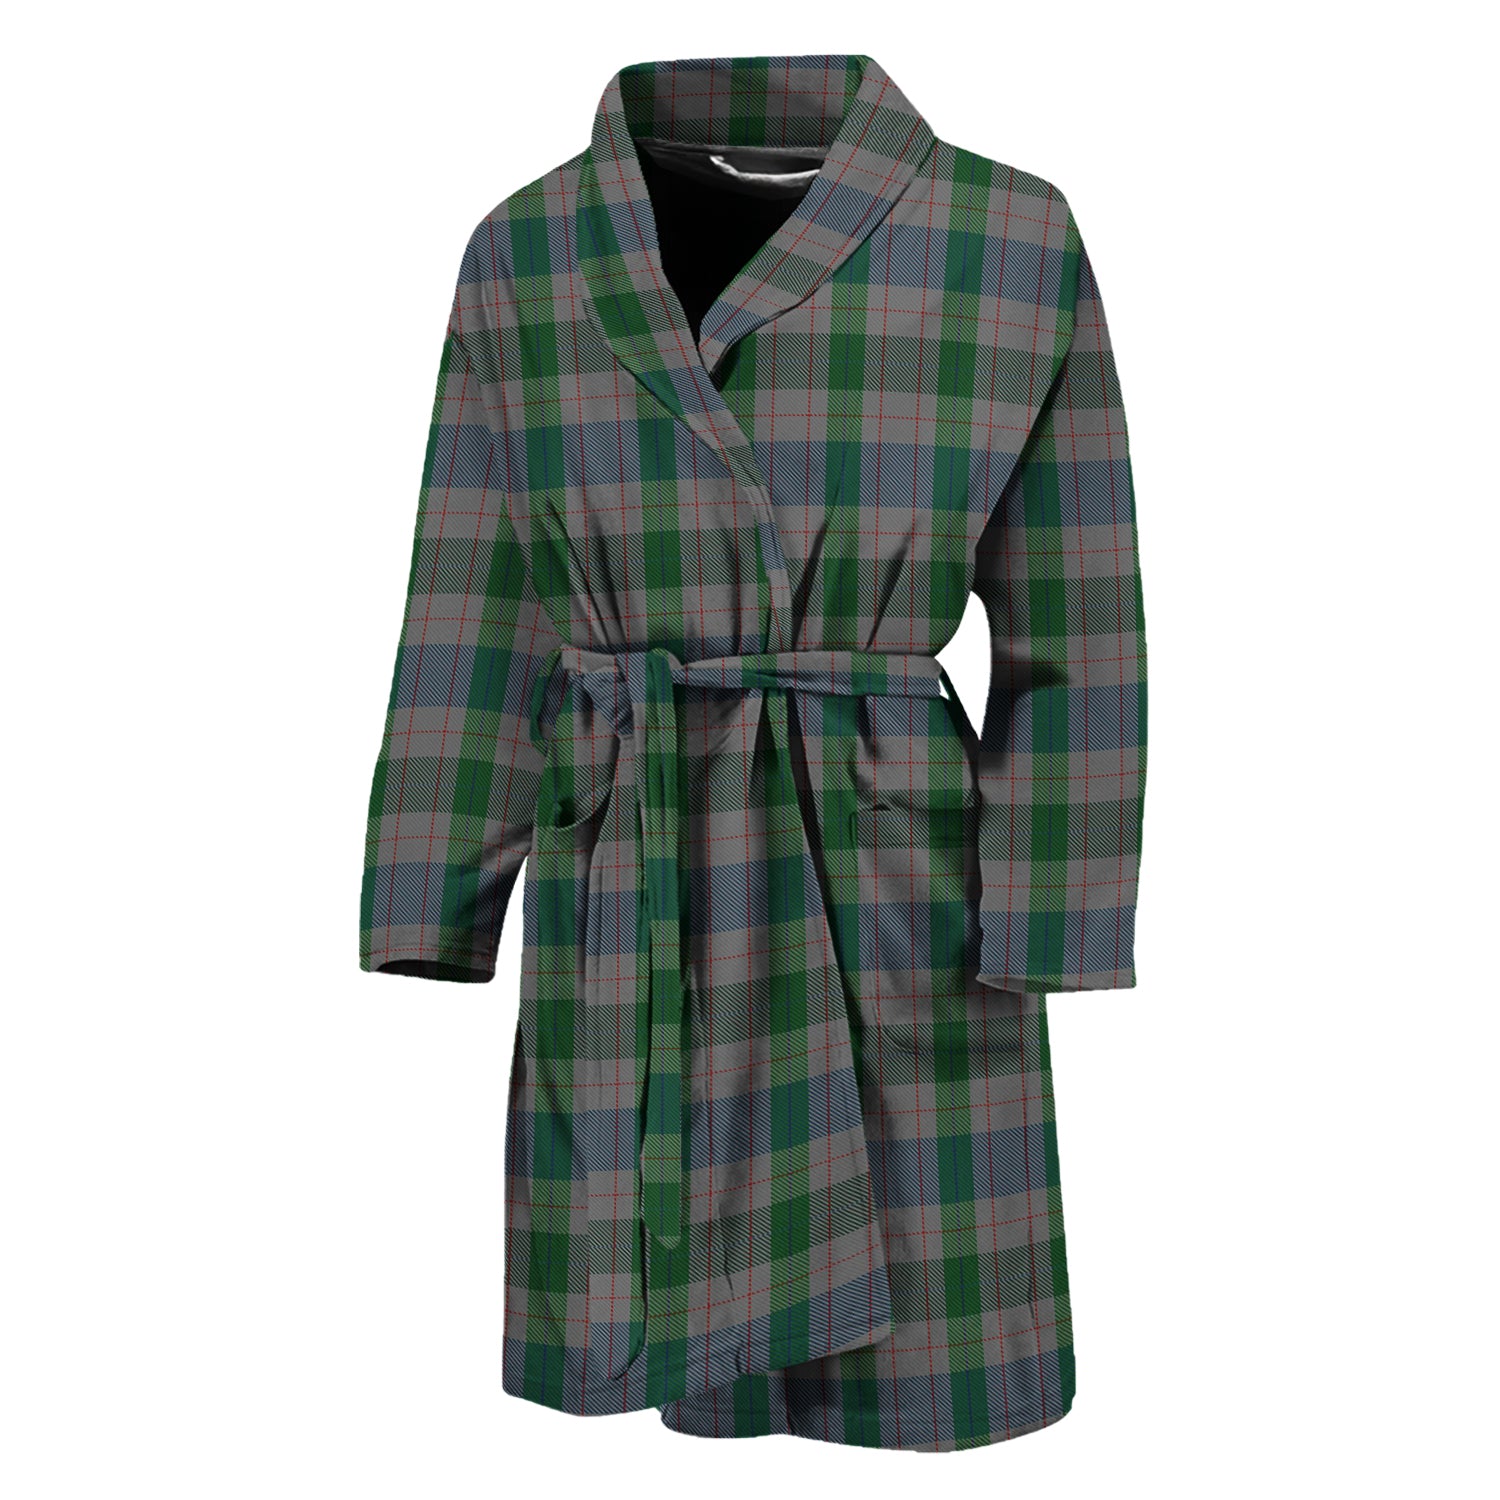 lloyd-of-wales-tartan-bathrobe